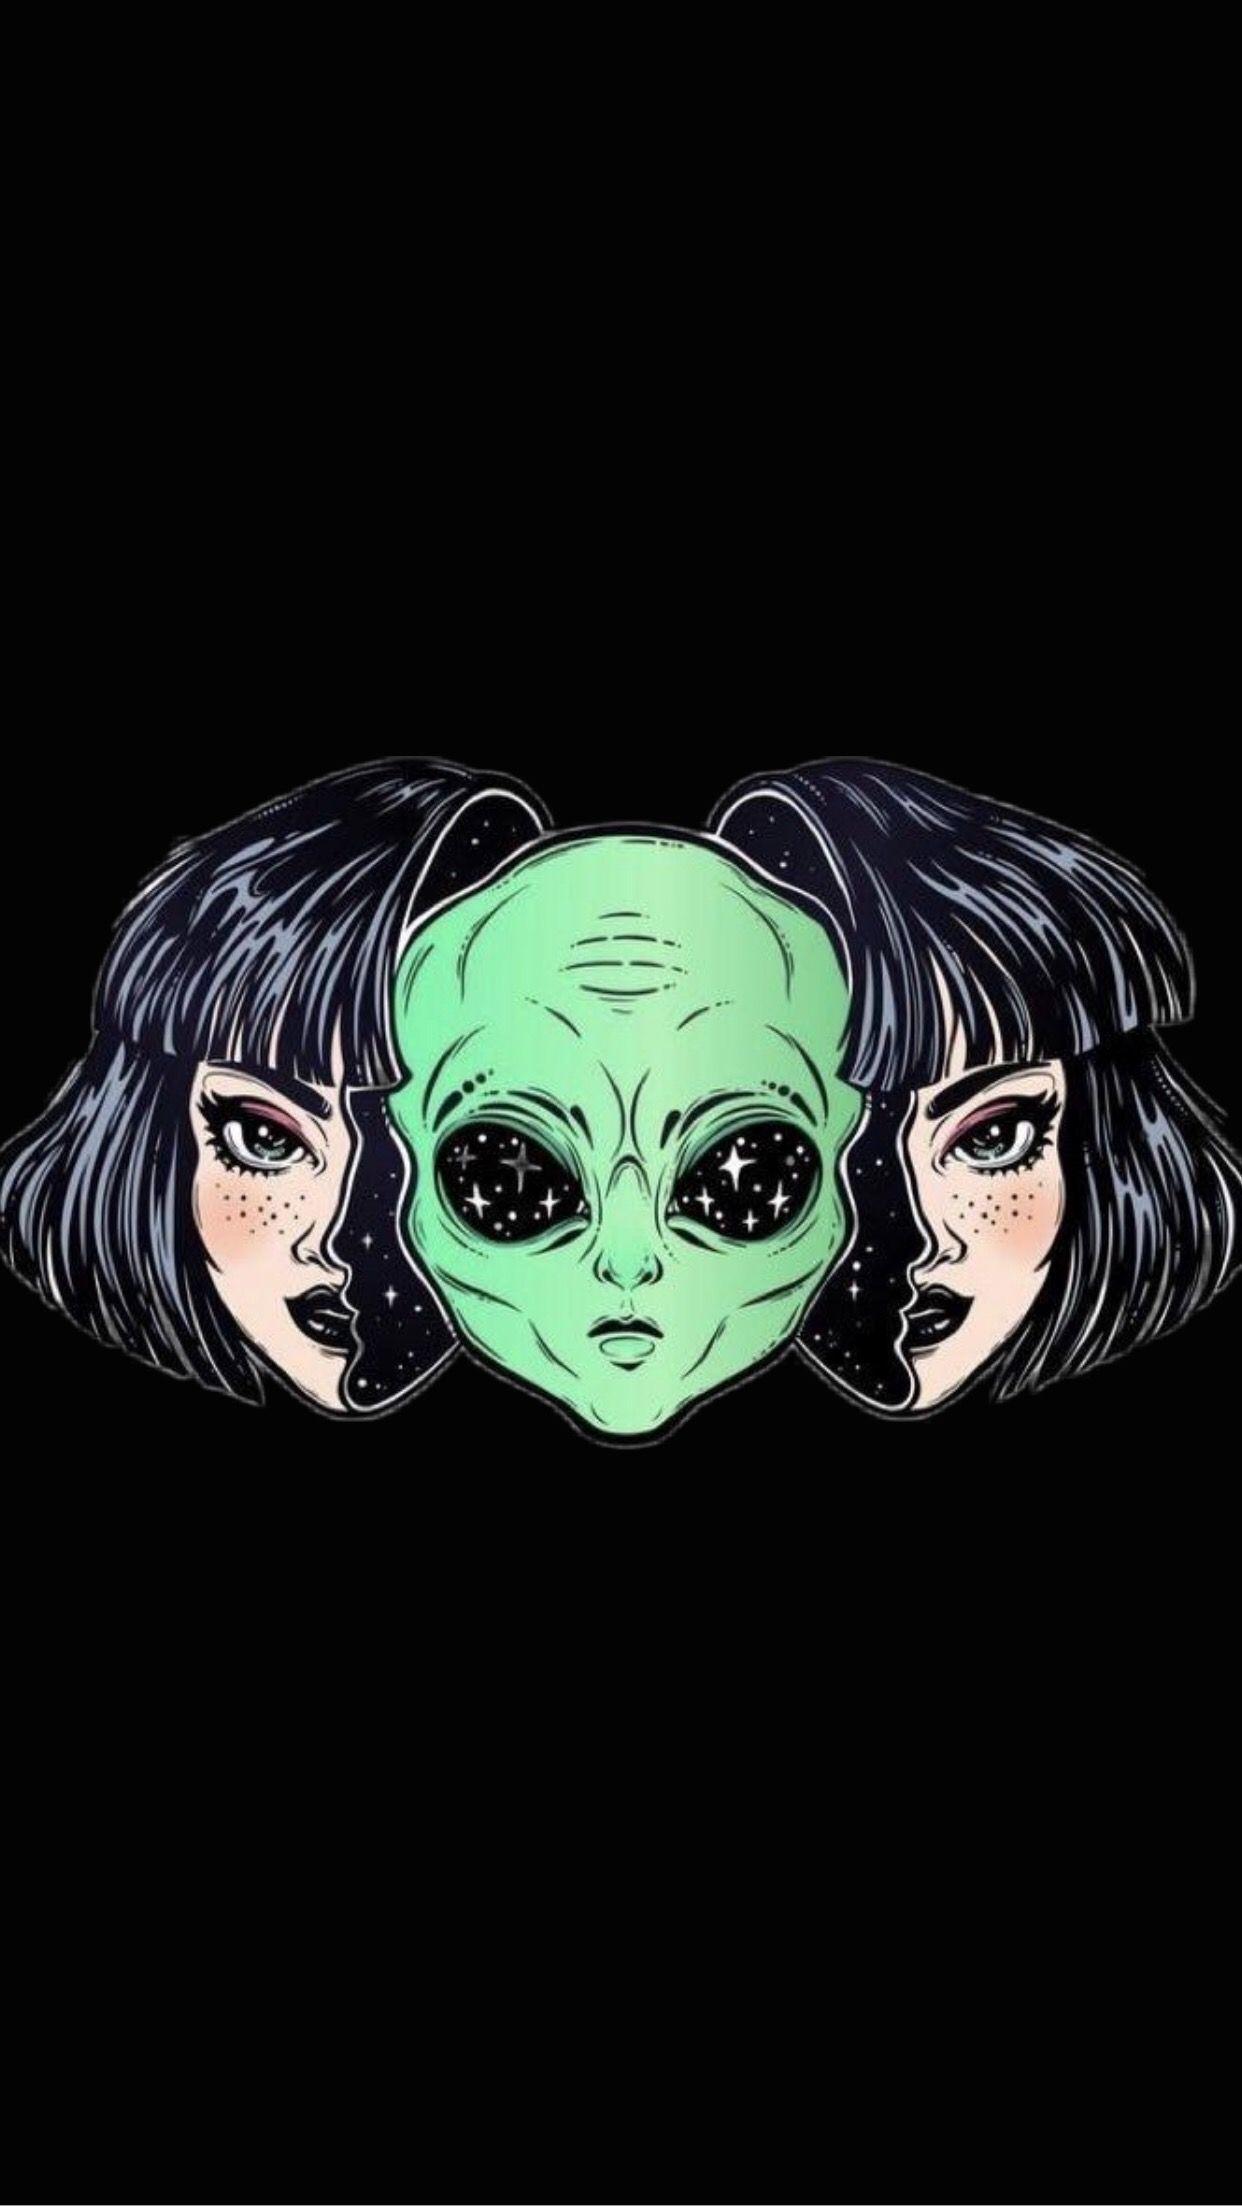 Black Lockscreen / Wallpaper / Background Aesthetic Alien Space Girl